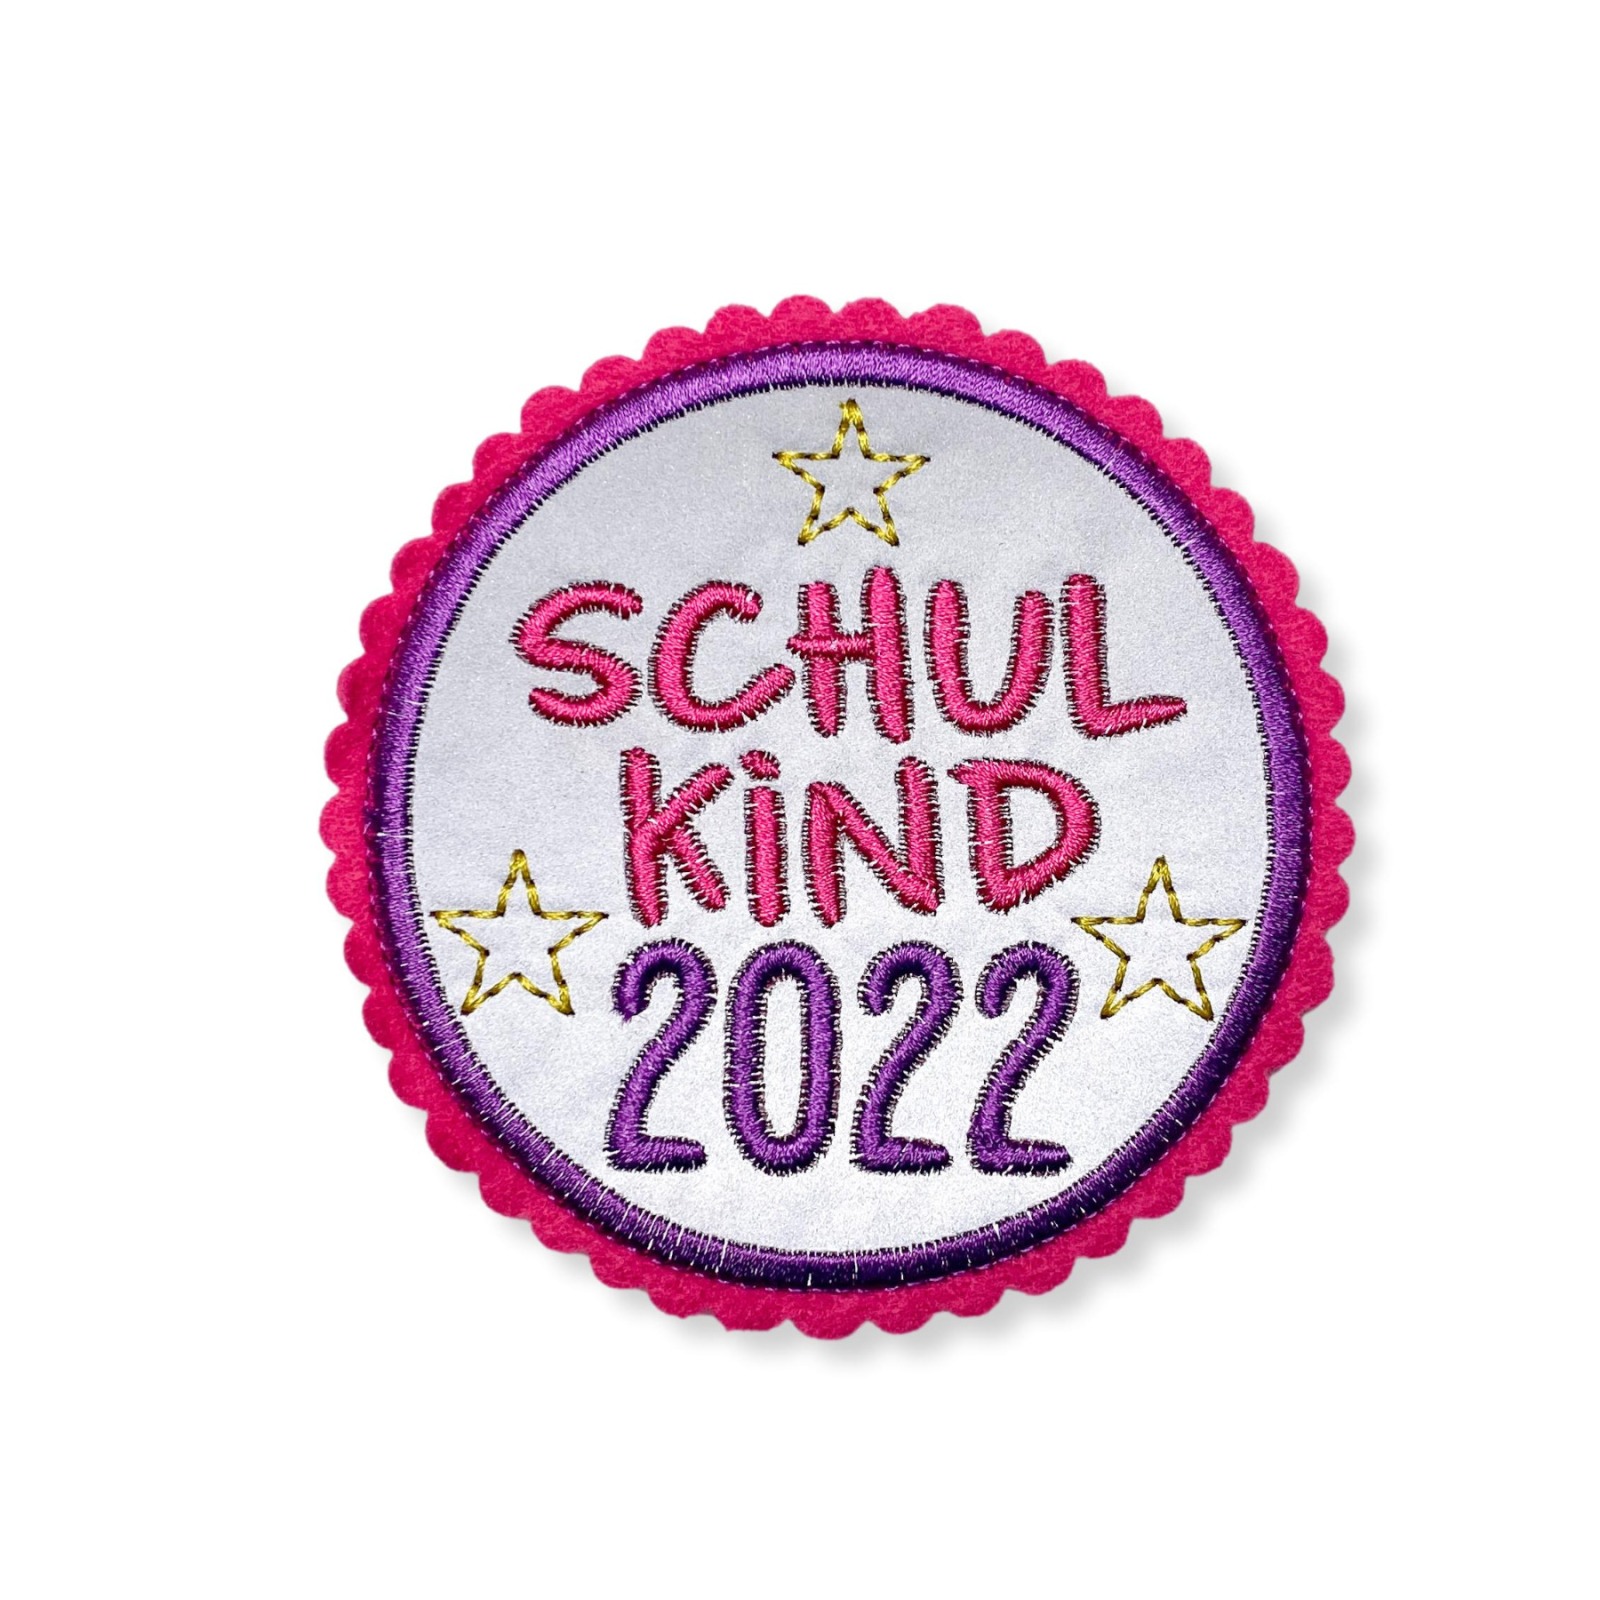 Kletti Schulkind 2022 10cm Durchmesser Reflektorstoff pink lila Einschulung für den Schulranzen 2